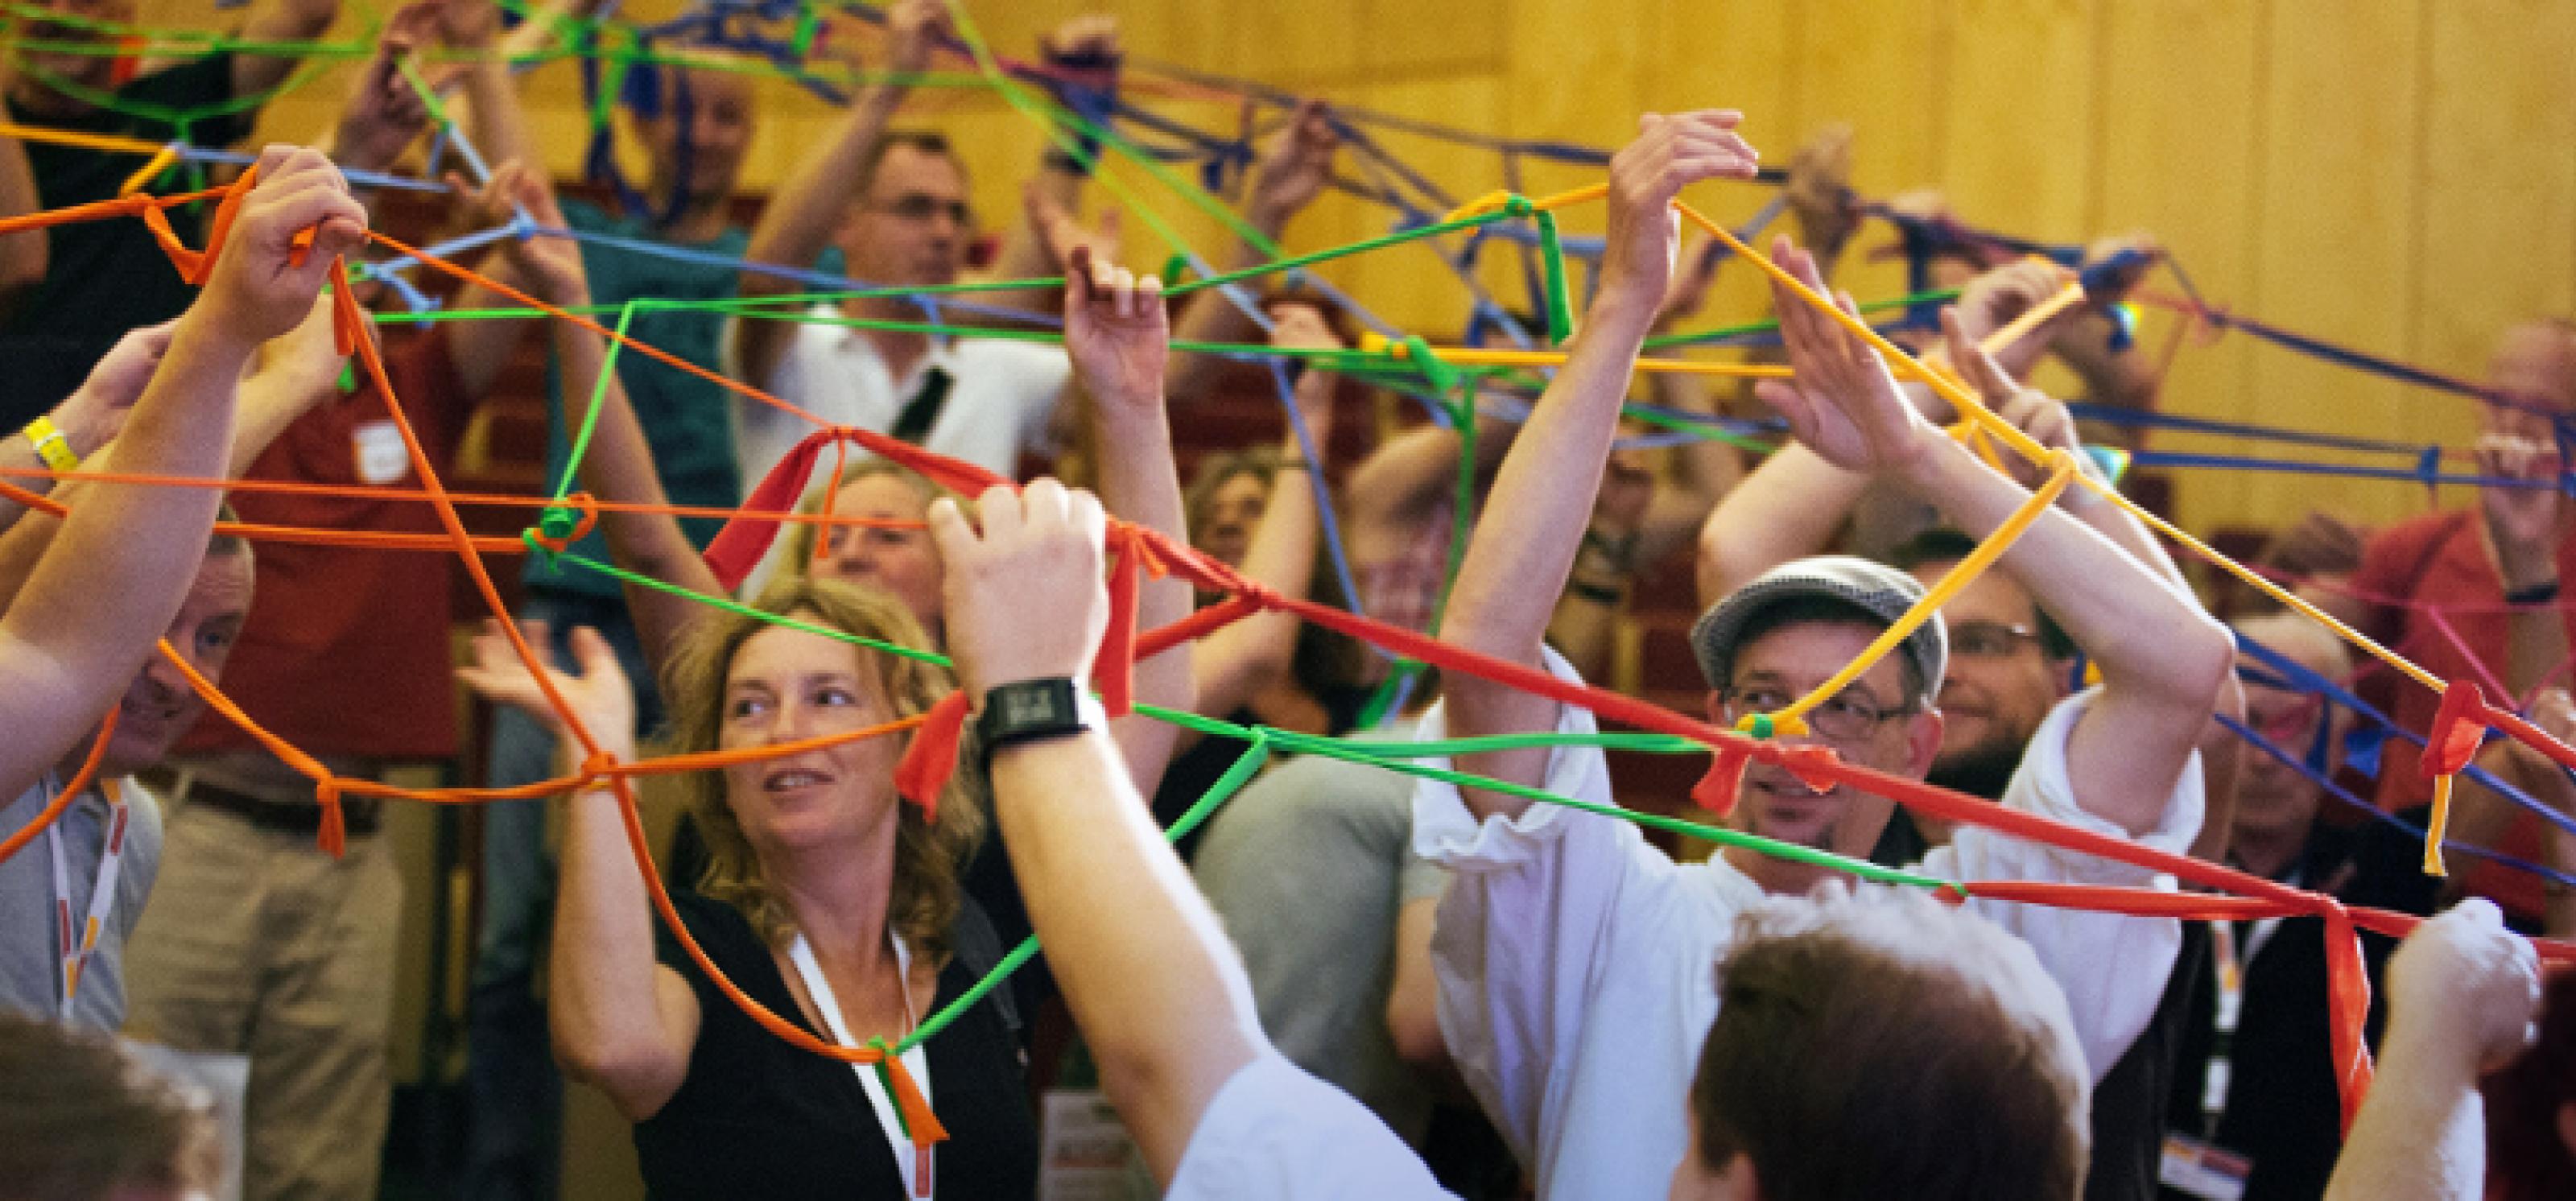 Viele Menschen in einem Konferenzsaal halten an ausgestreckten Armen ein Netz aus zusammengeknüpften bunten Bändern in die Luft